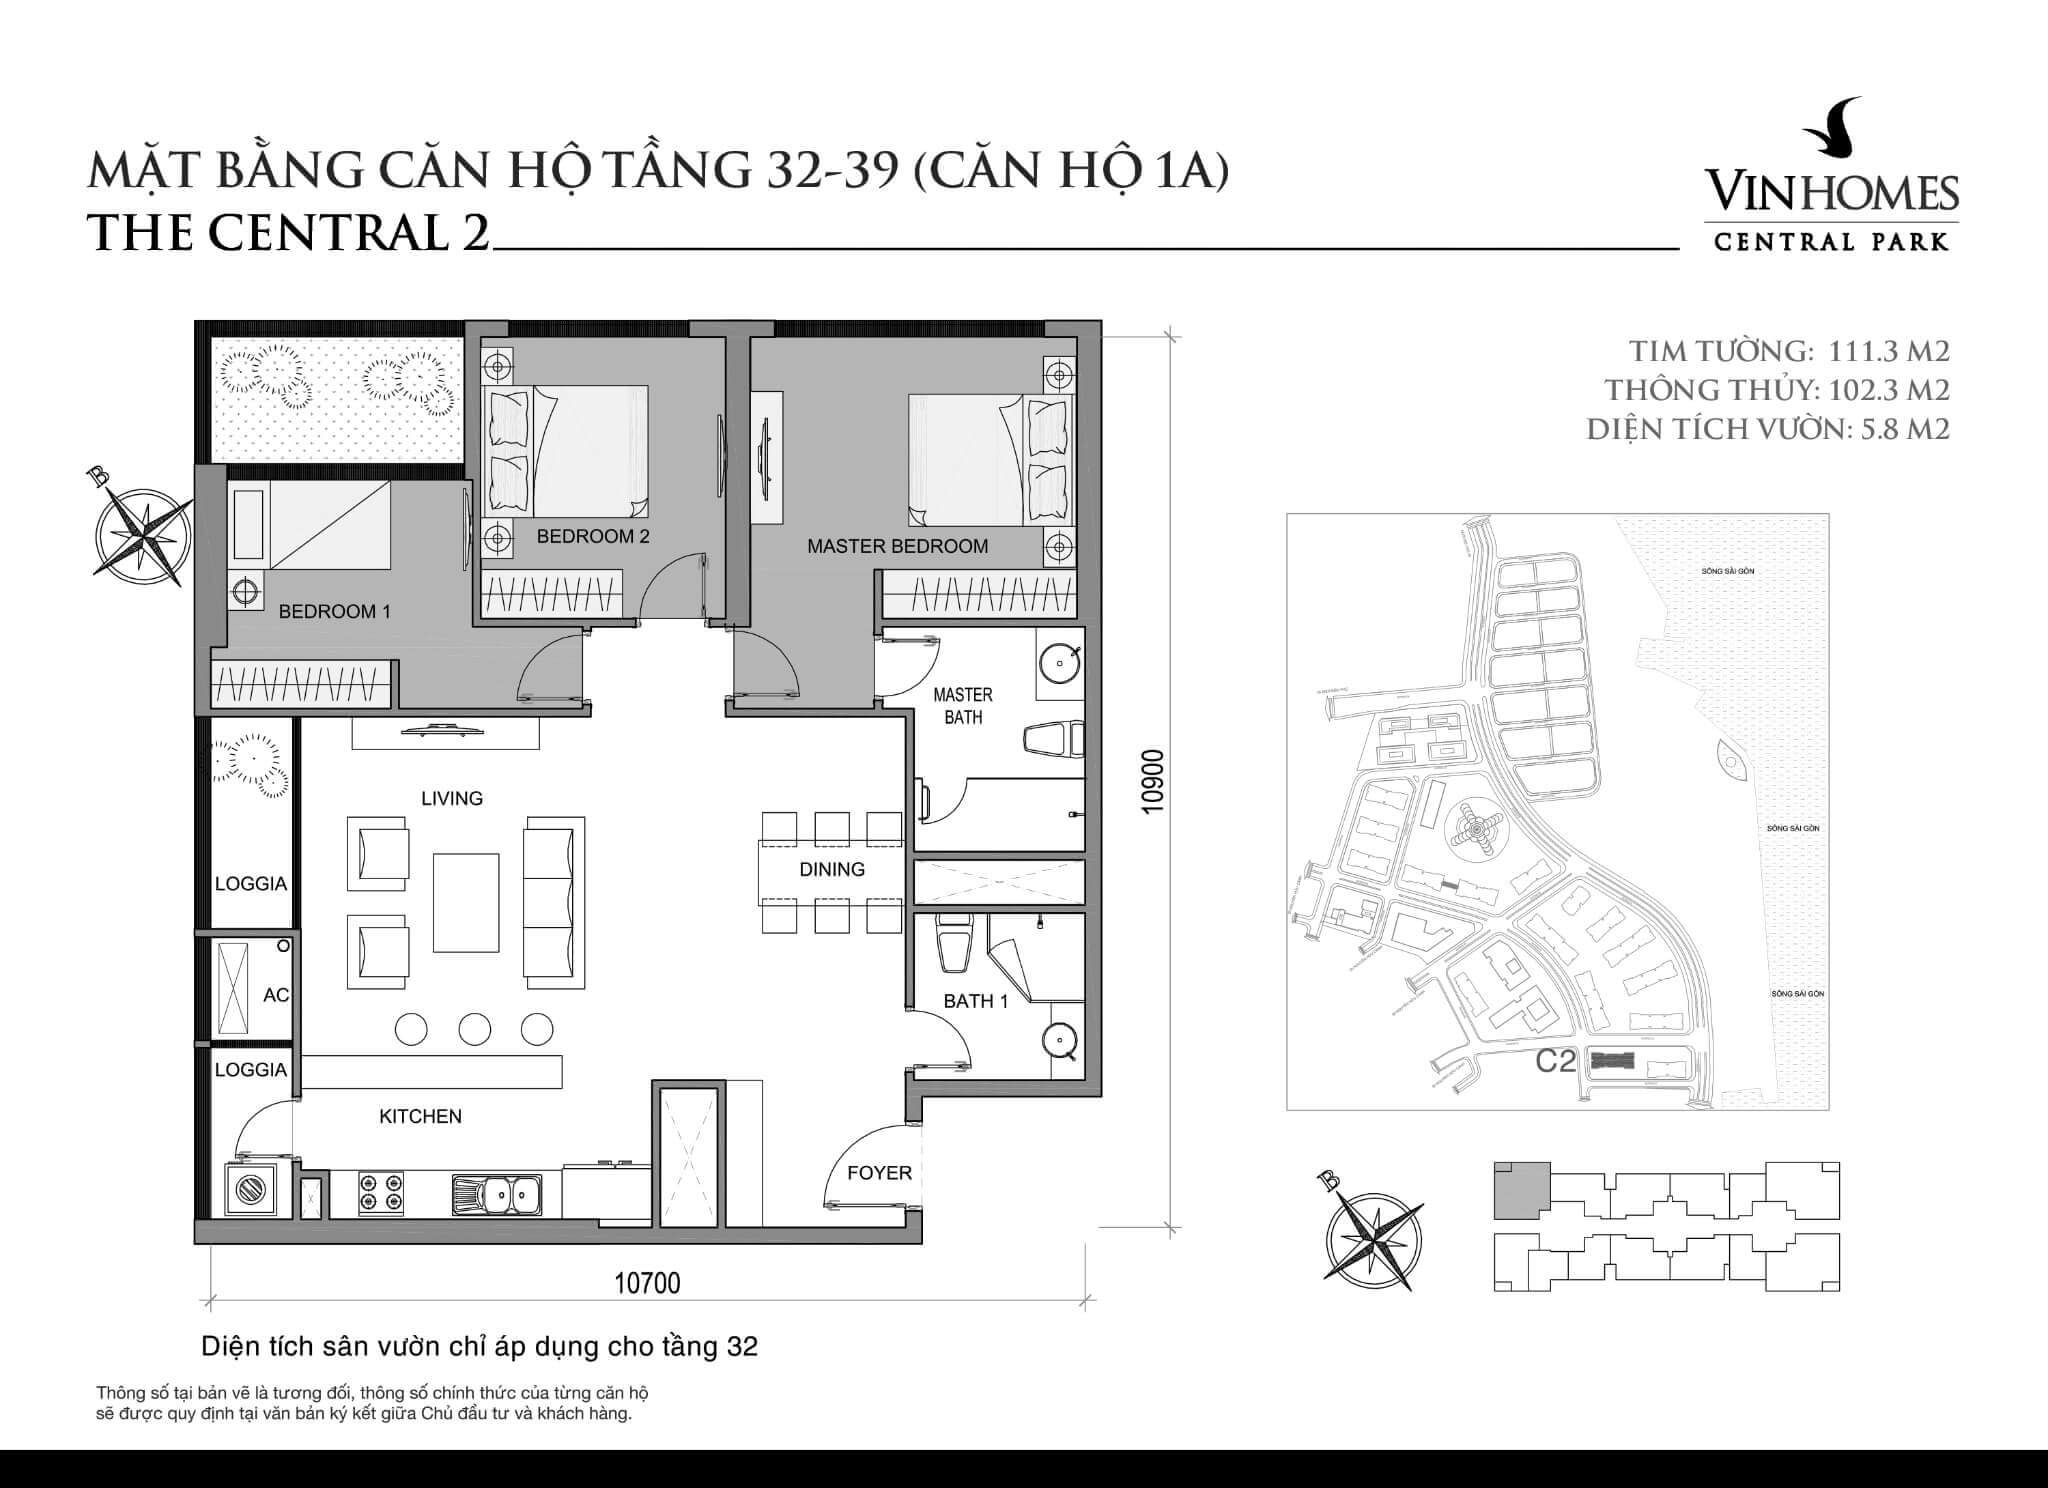 layout căn hộ số 1A tầng 32-39 Central 2